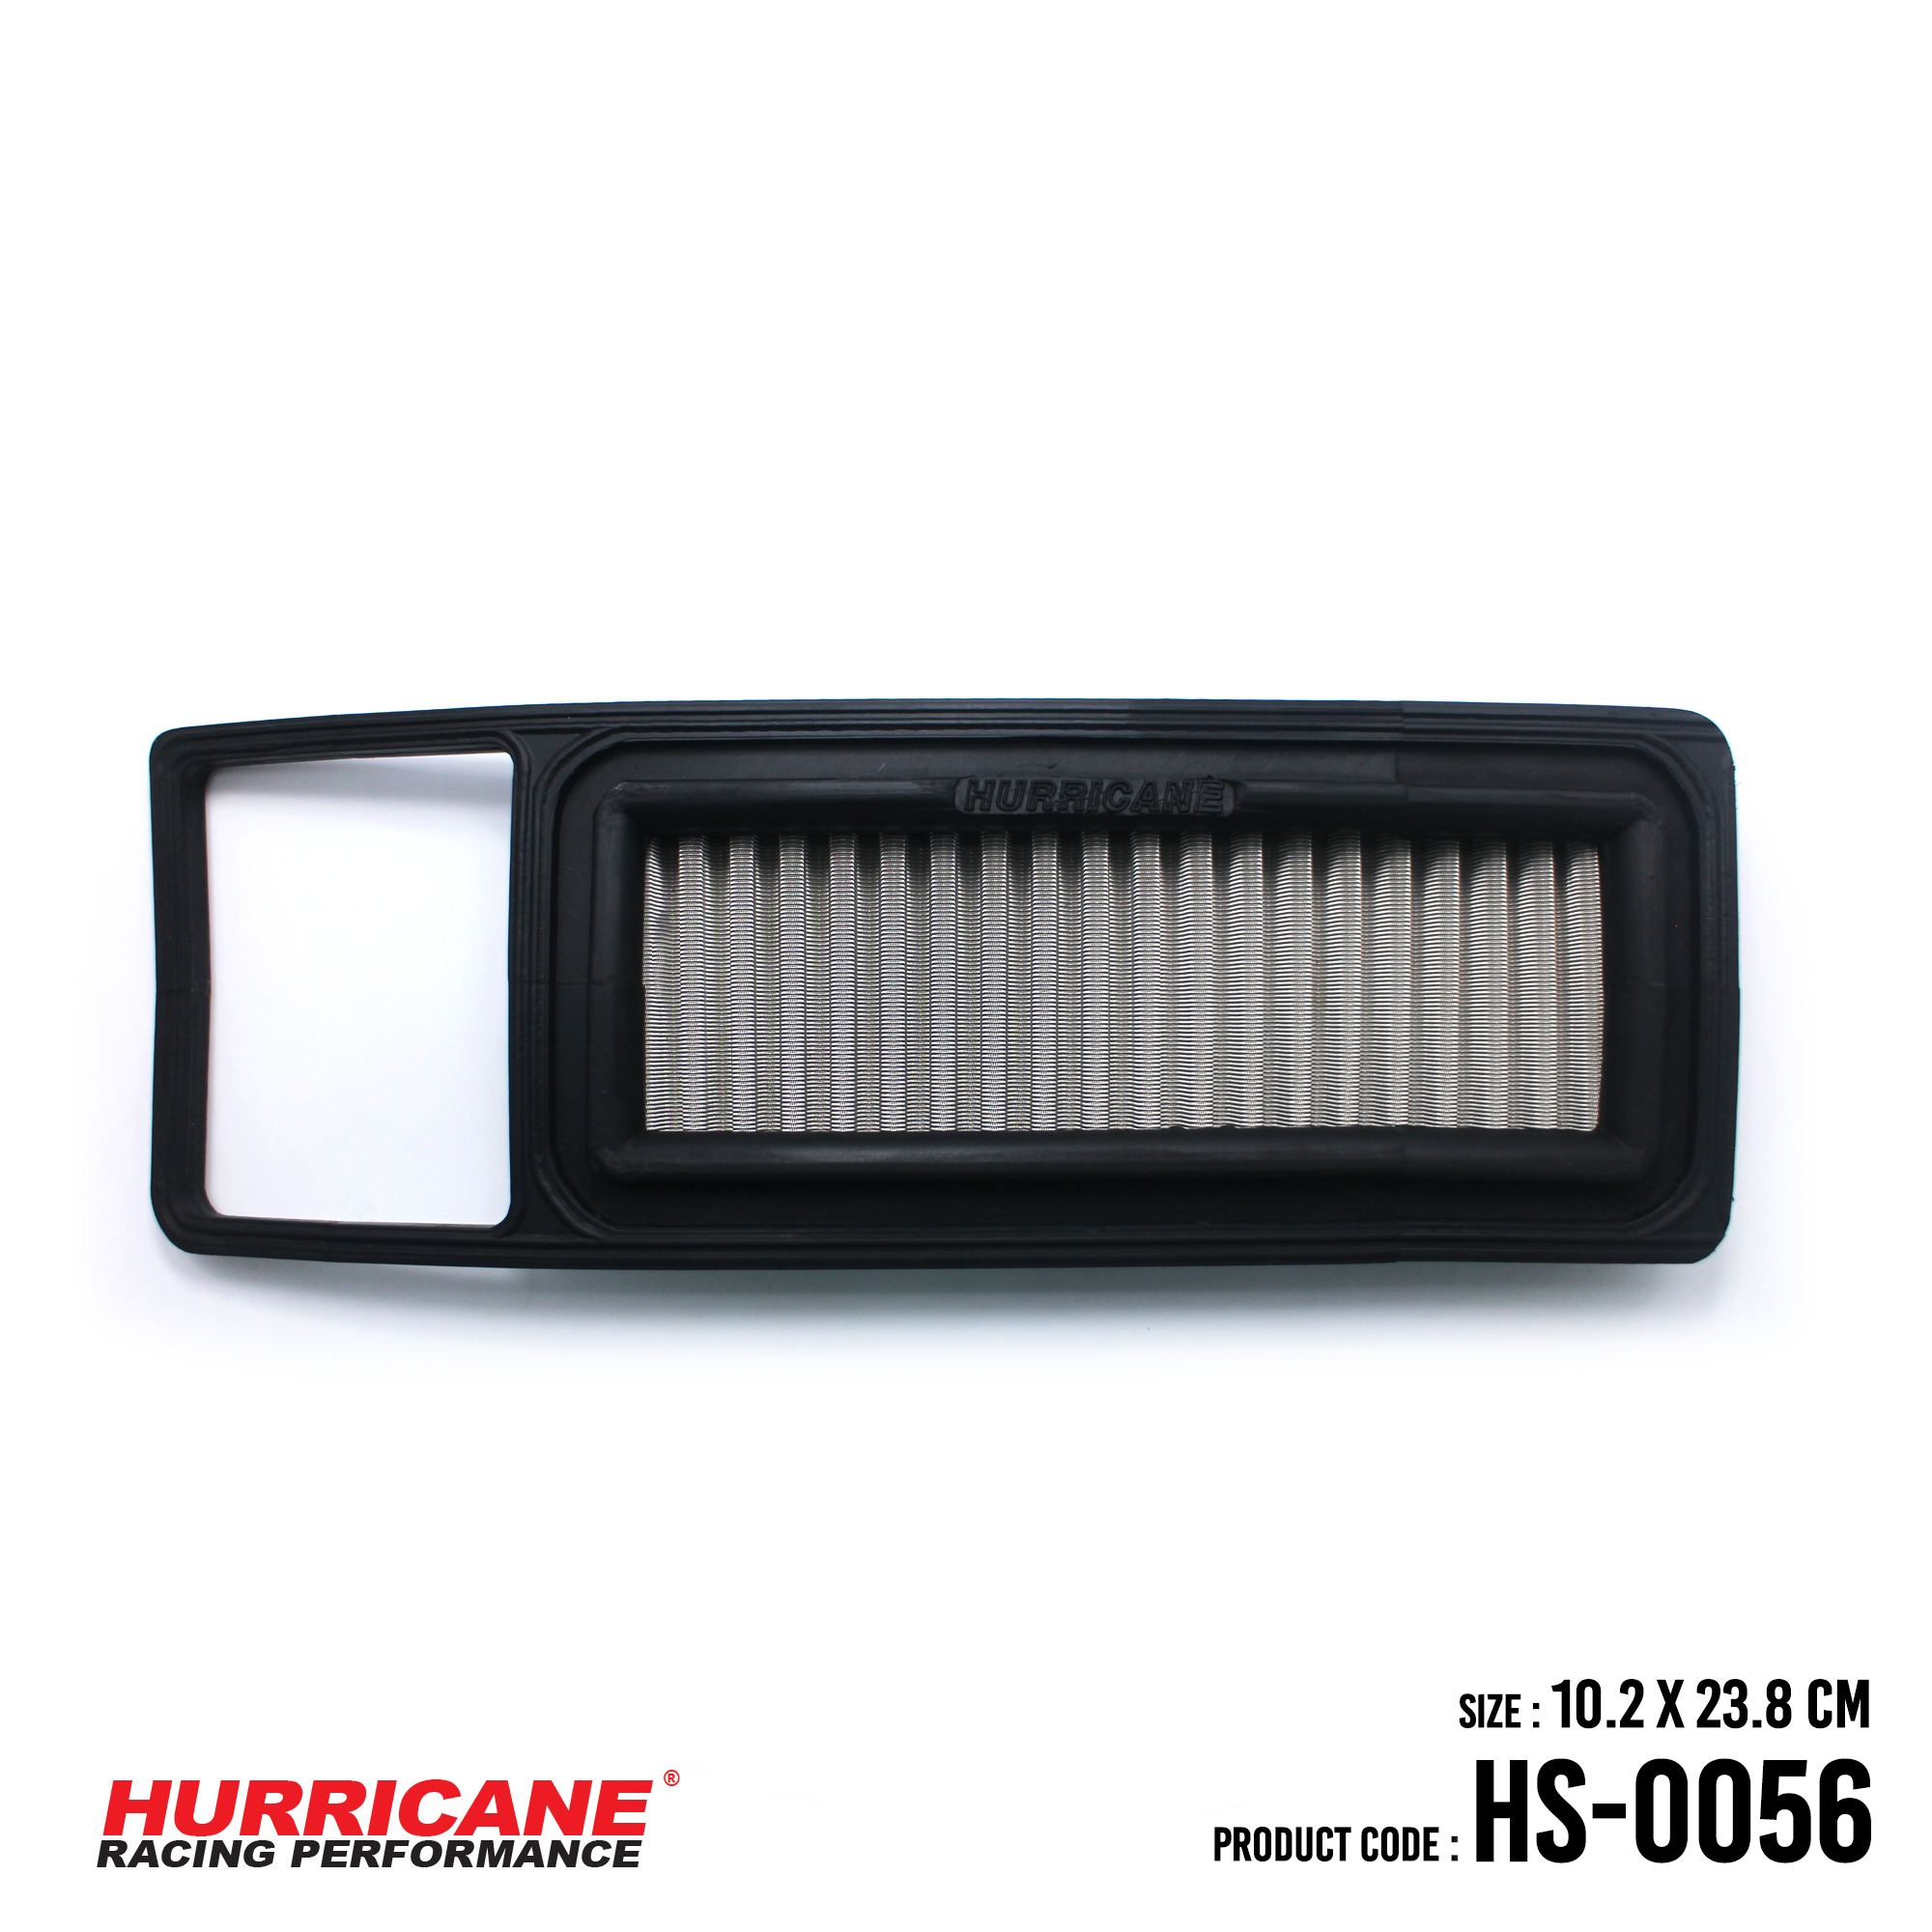 HURRICANE STAINLESS STEEL AIR FILTER FOR HS-0056 Honda